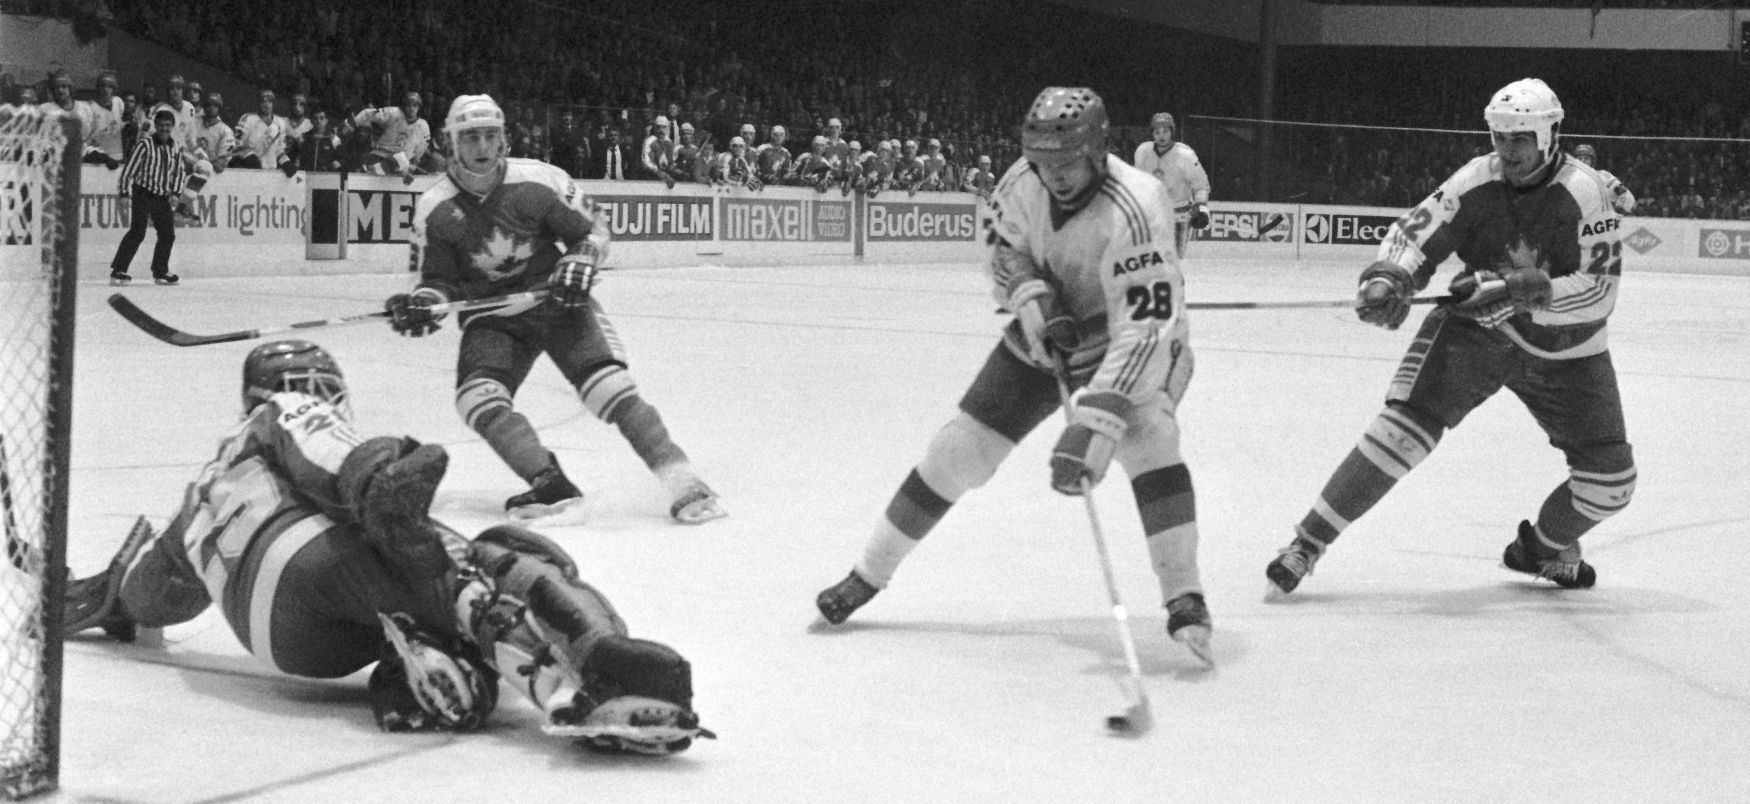 MS 1985 v hokeji v Praze: Jiří Šejba střílí svůj třetí gól v zápase proti Kanadě